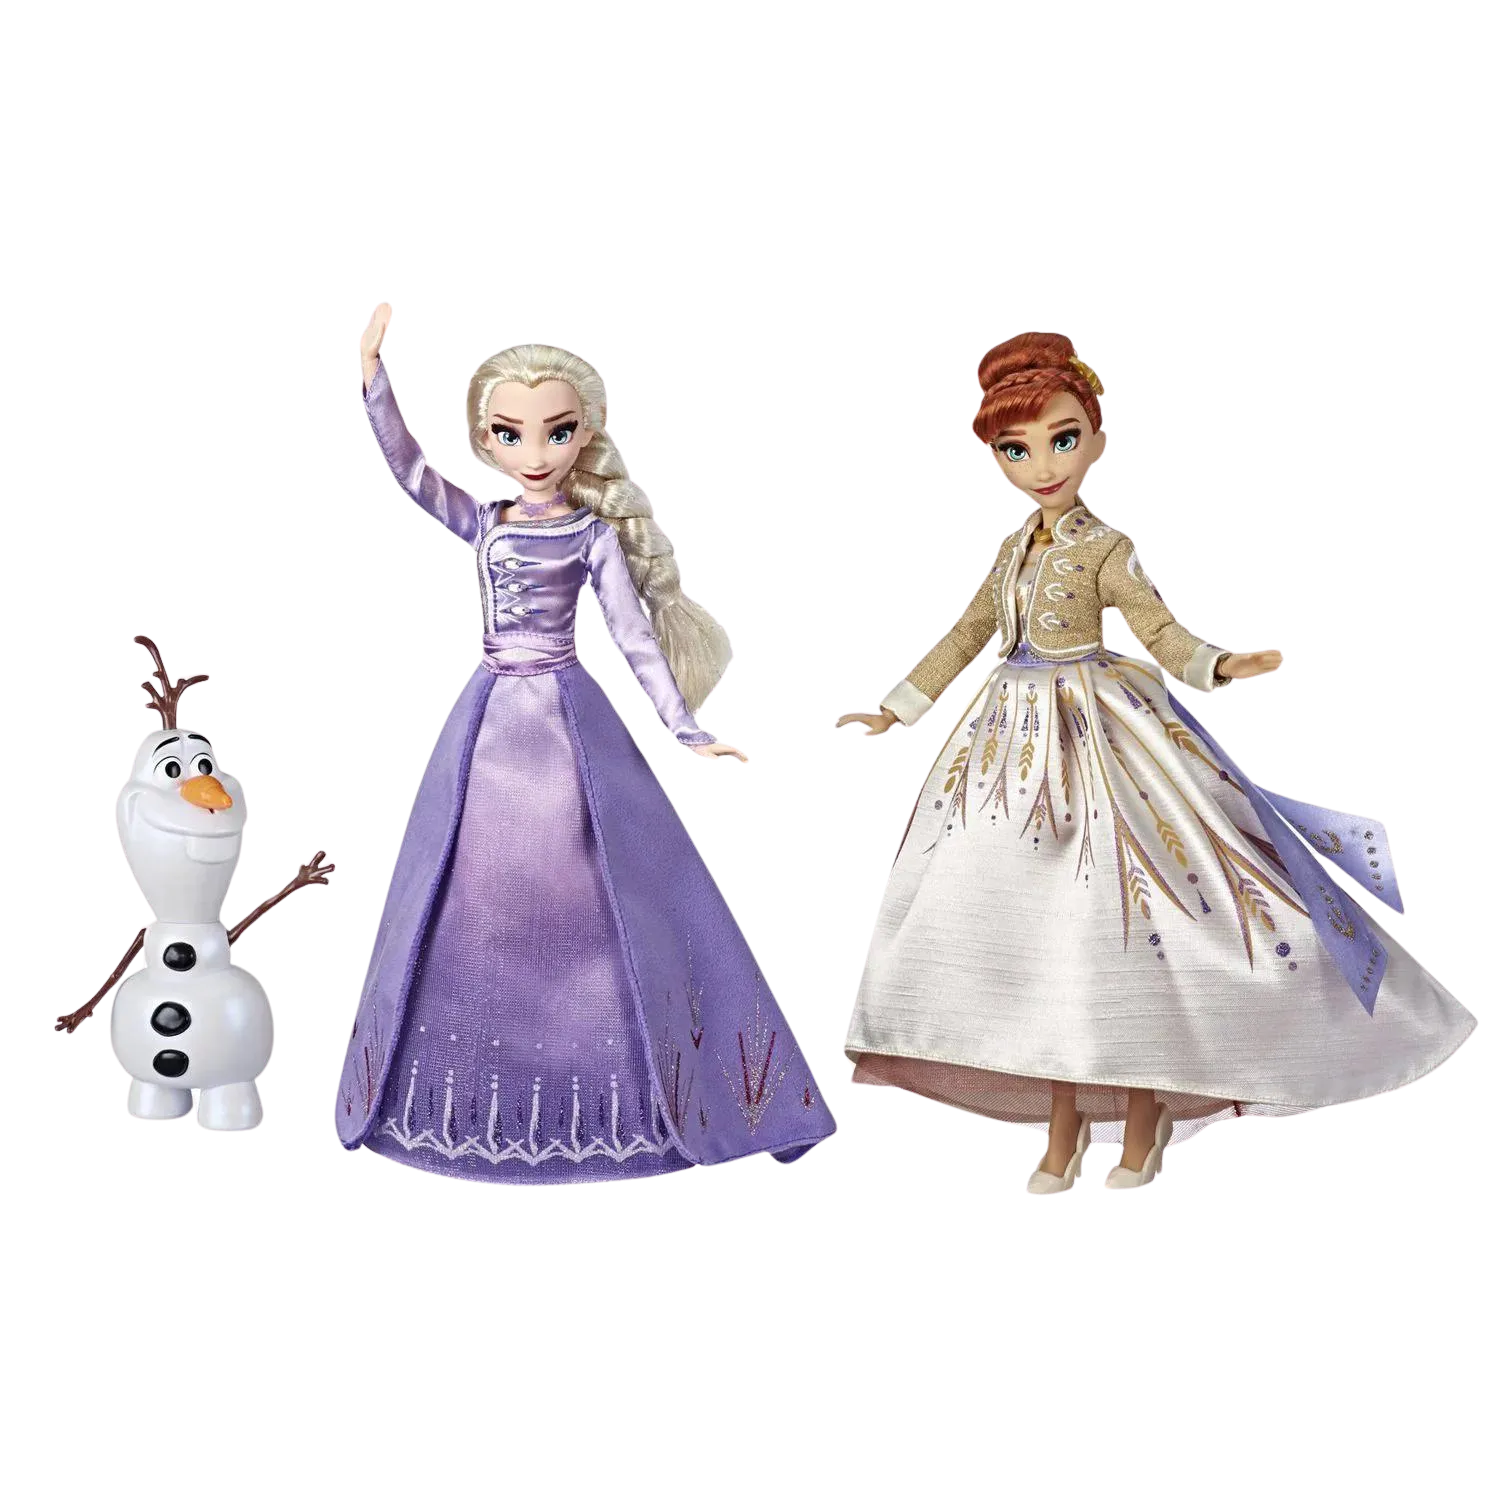 這張圖片展示了艾莎、安娜和奧拉夫的芭比娃娃。